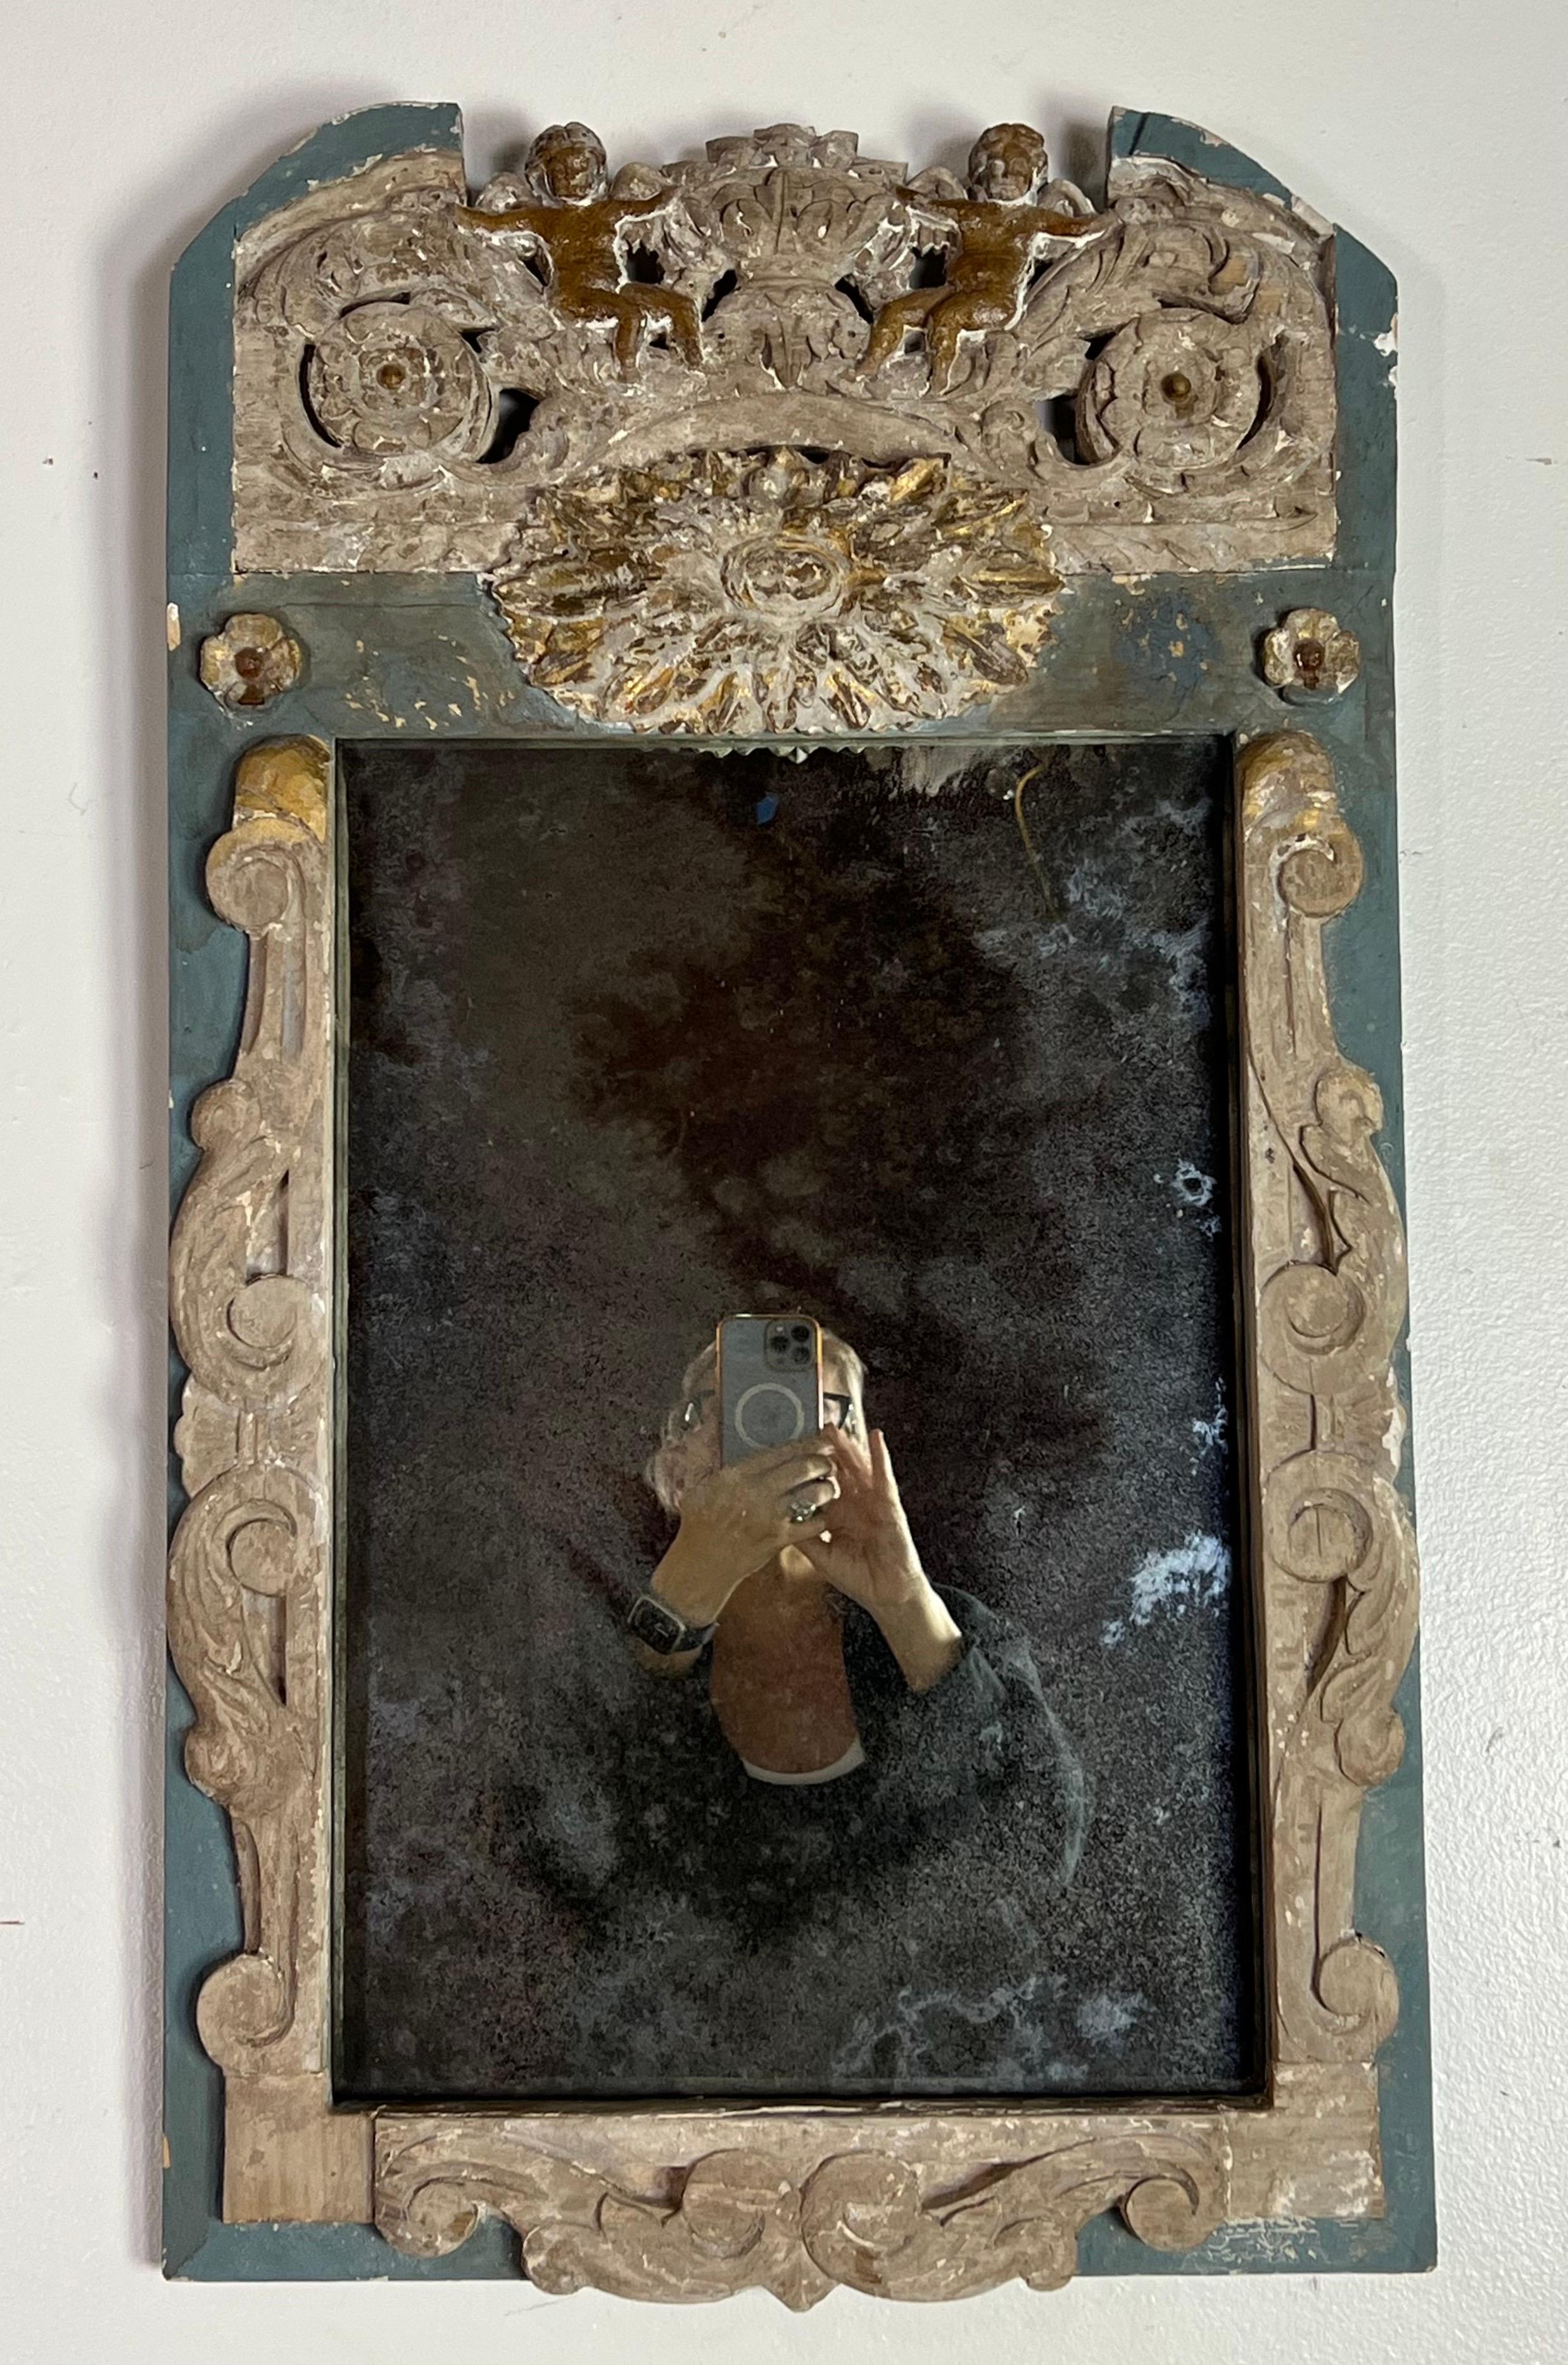 Un charmant petit miroir italien qui parle au cœur de l'art italien et du design romantique.  Le cadre du miroir est une exposition de sculptures exquises, avec des feuilles d'acanthe enroulées qui se déploient gracieusement sur sa surface,